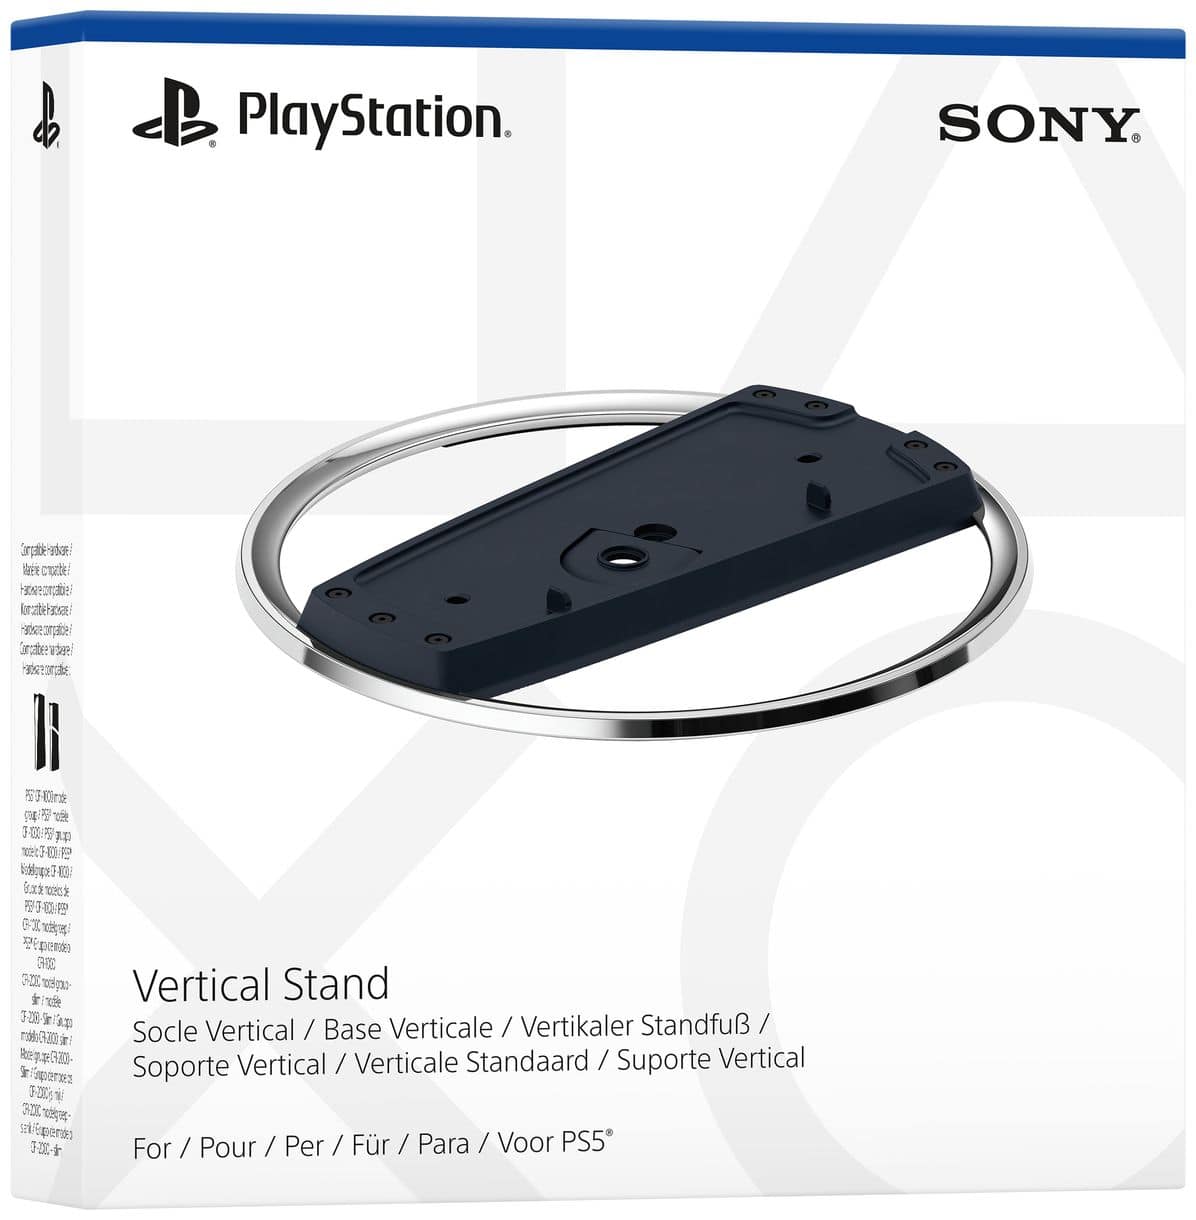 Vertical Stand PlayStation 5 Slim, PlayStation 5 Slim Digital Edition PlayStation 5 Slim (Schwarz, Chrom) 